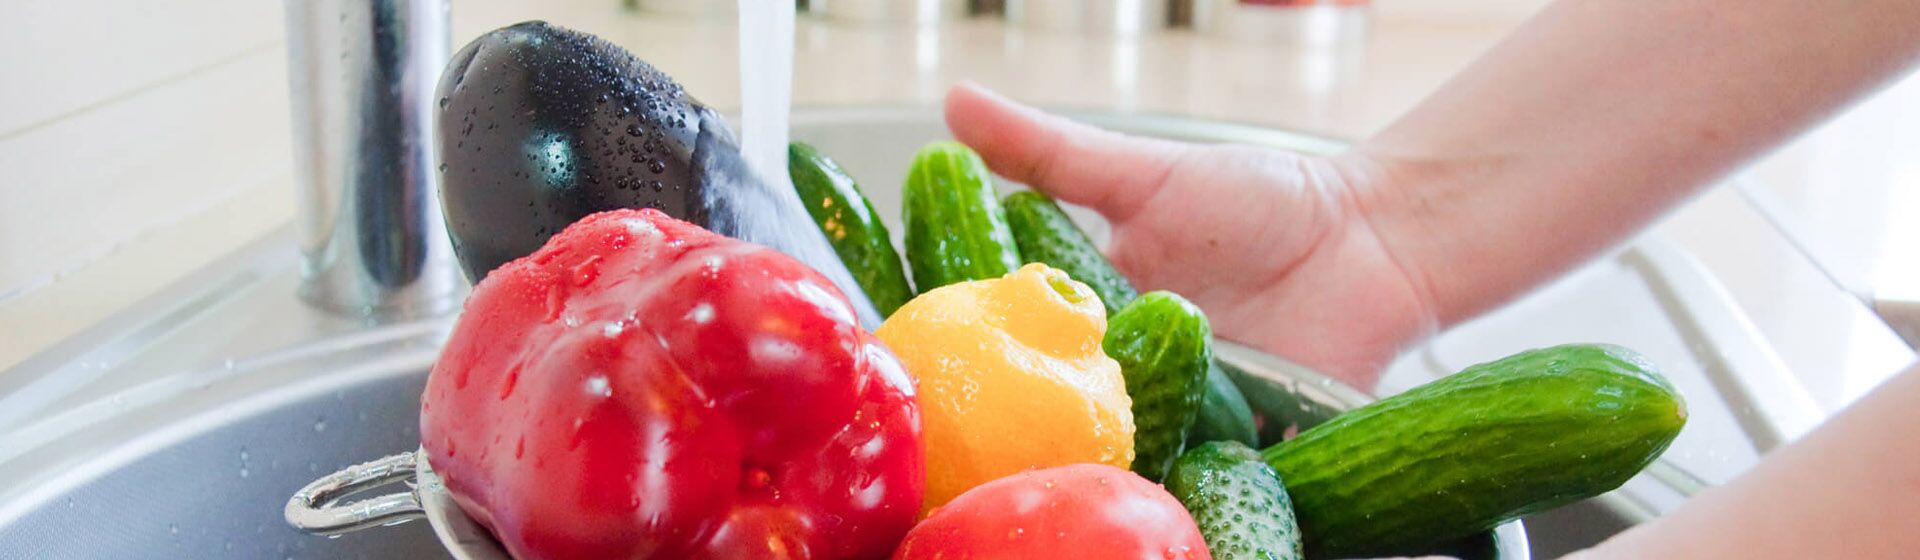 Как нужно мыть овощи и фрукты перед едой?